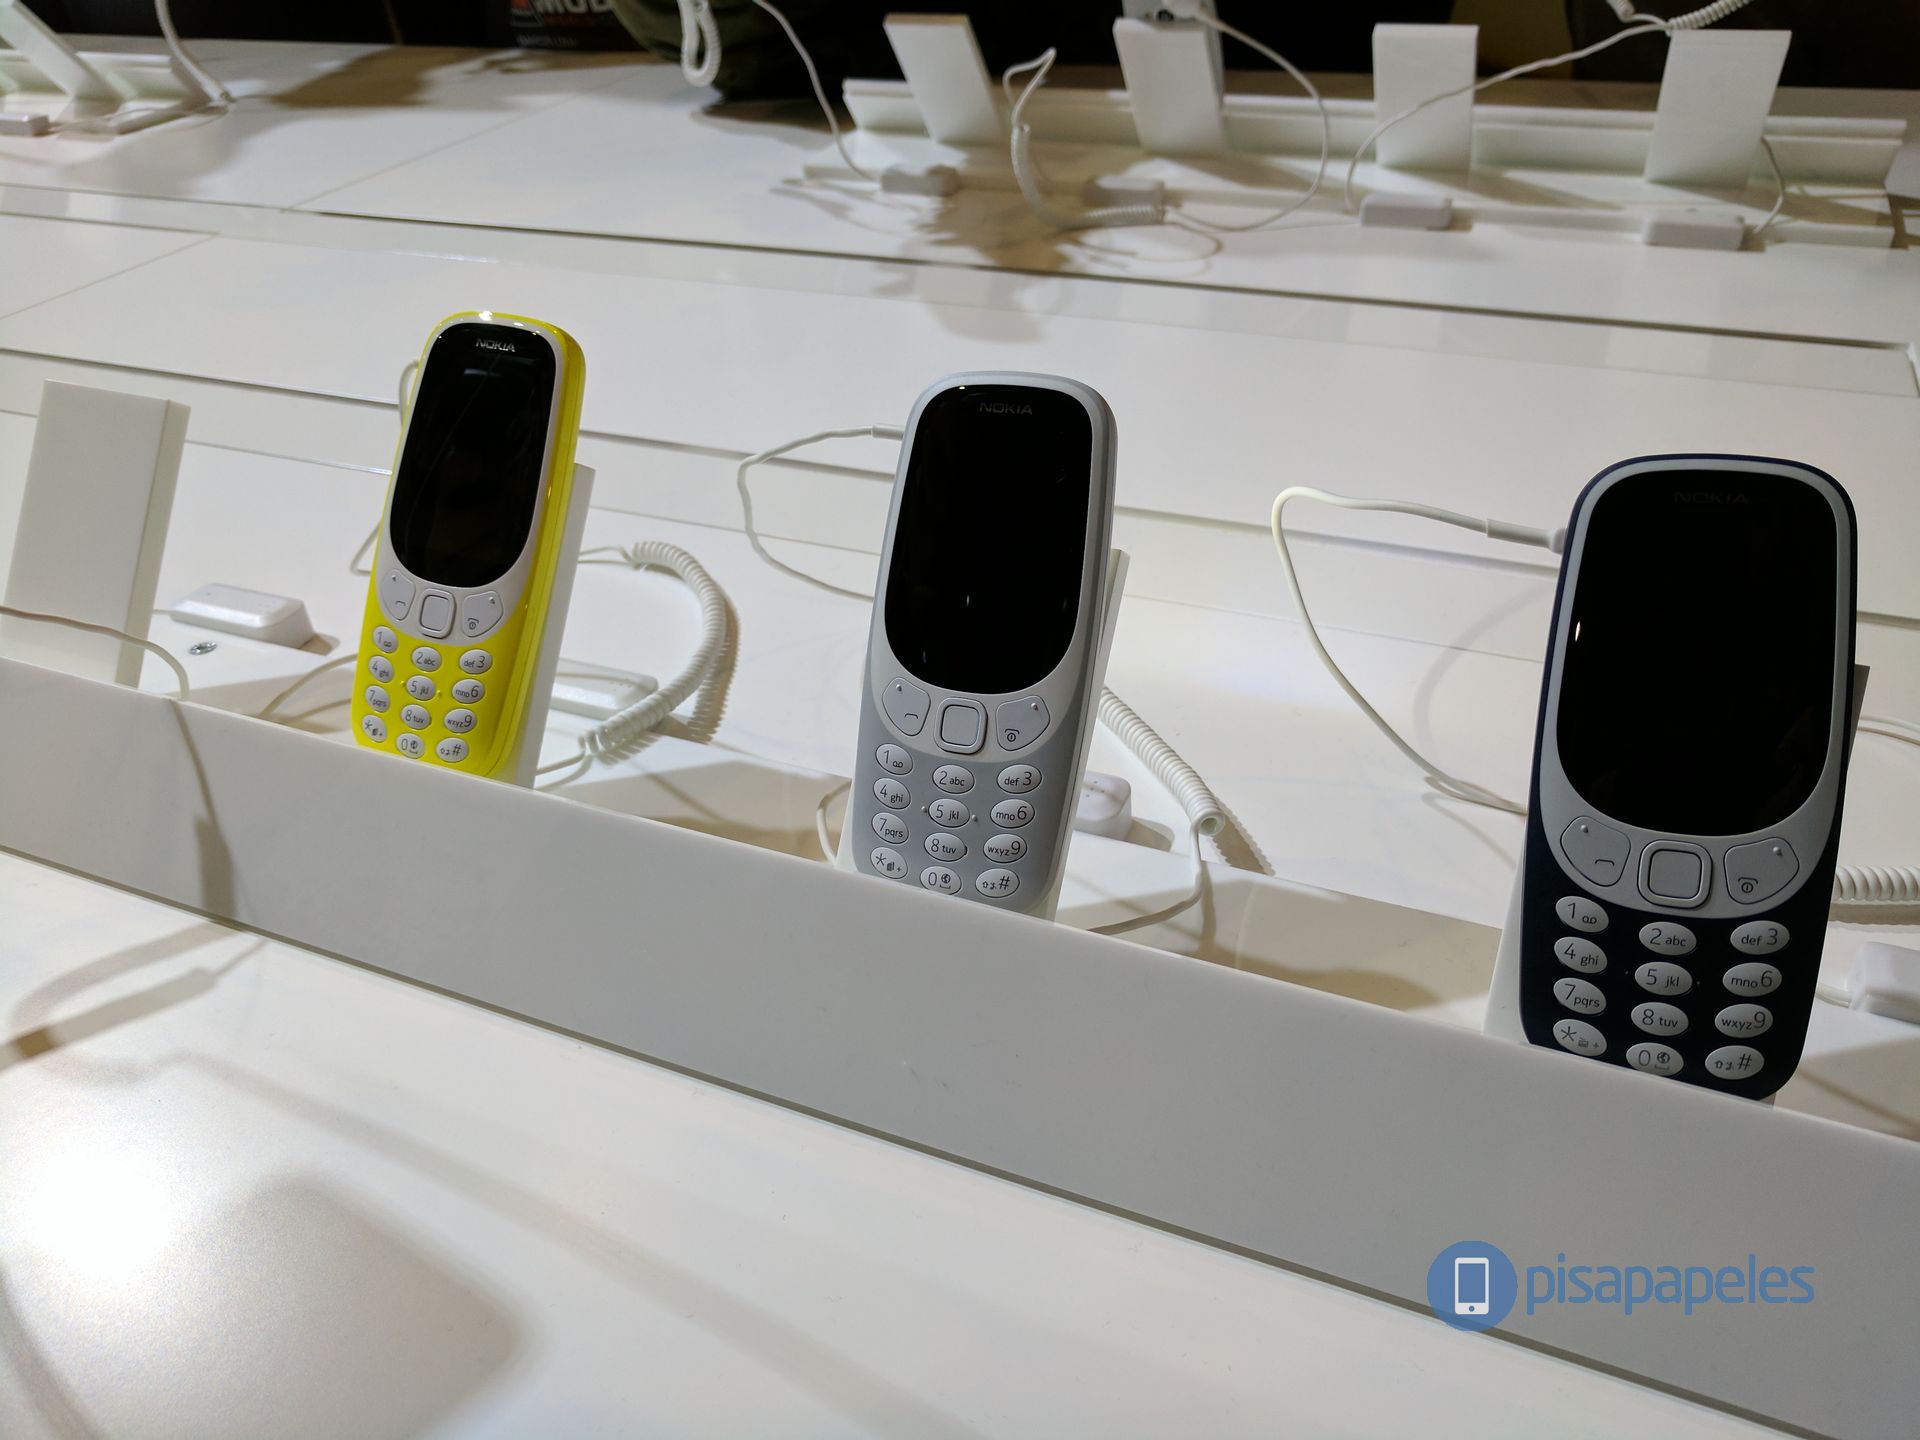 الانطباع الأول عن هاتف Nokia 3310 # MWC17 2